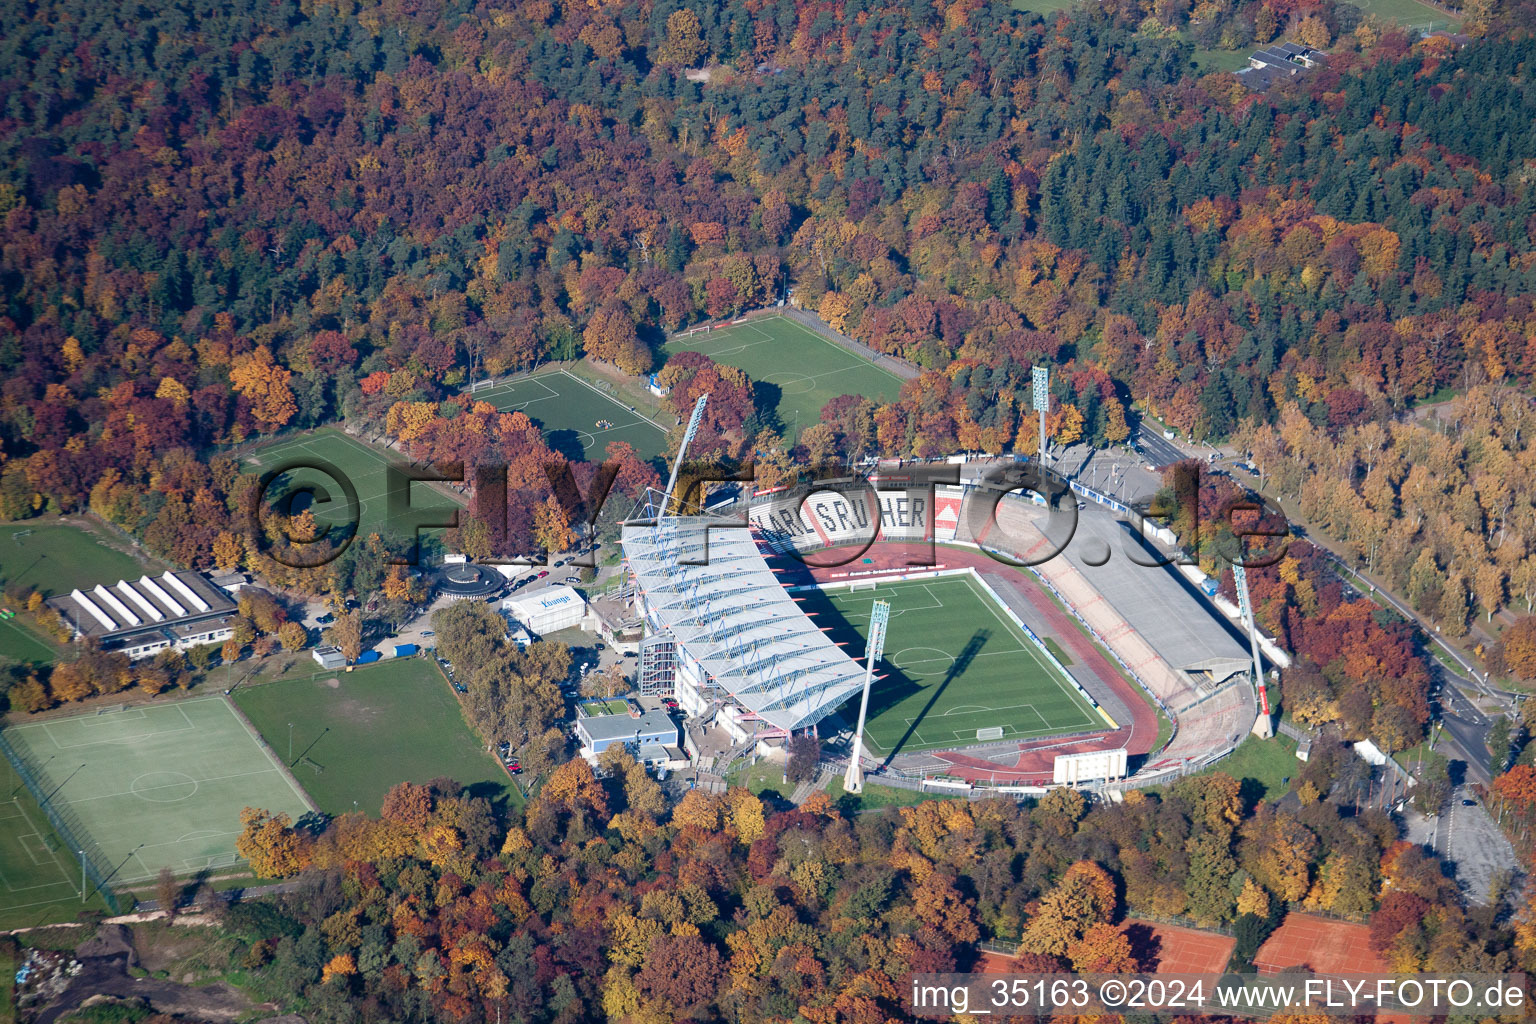 Luftbild von Fußball- Wildparkstadion des Vereins KSC in Karlsruhe im Ortsteil Innenstadt-Ost im Bundesland Baden-Württemberg, Deutschland